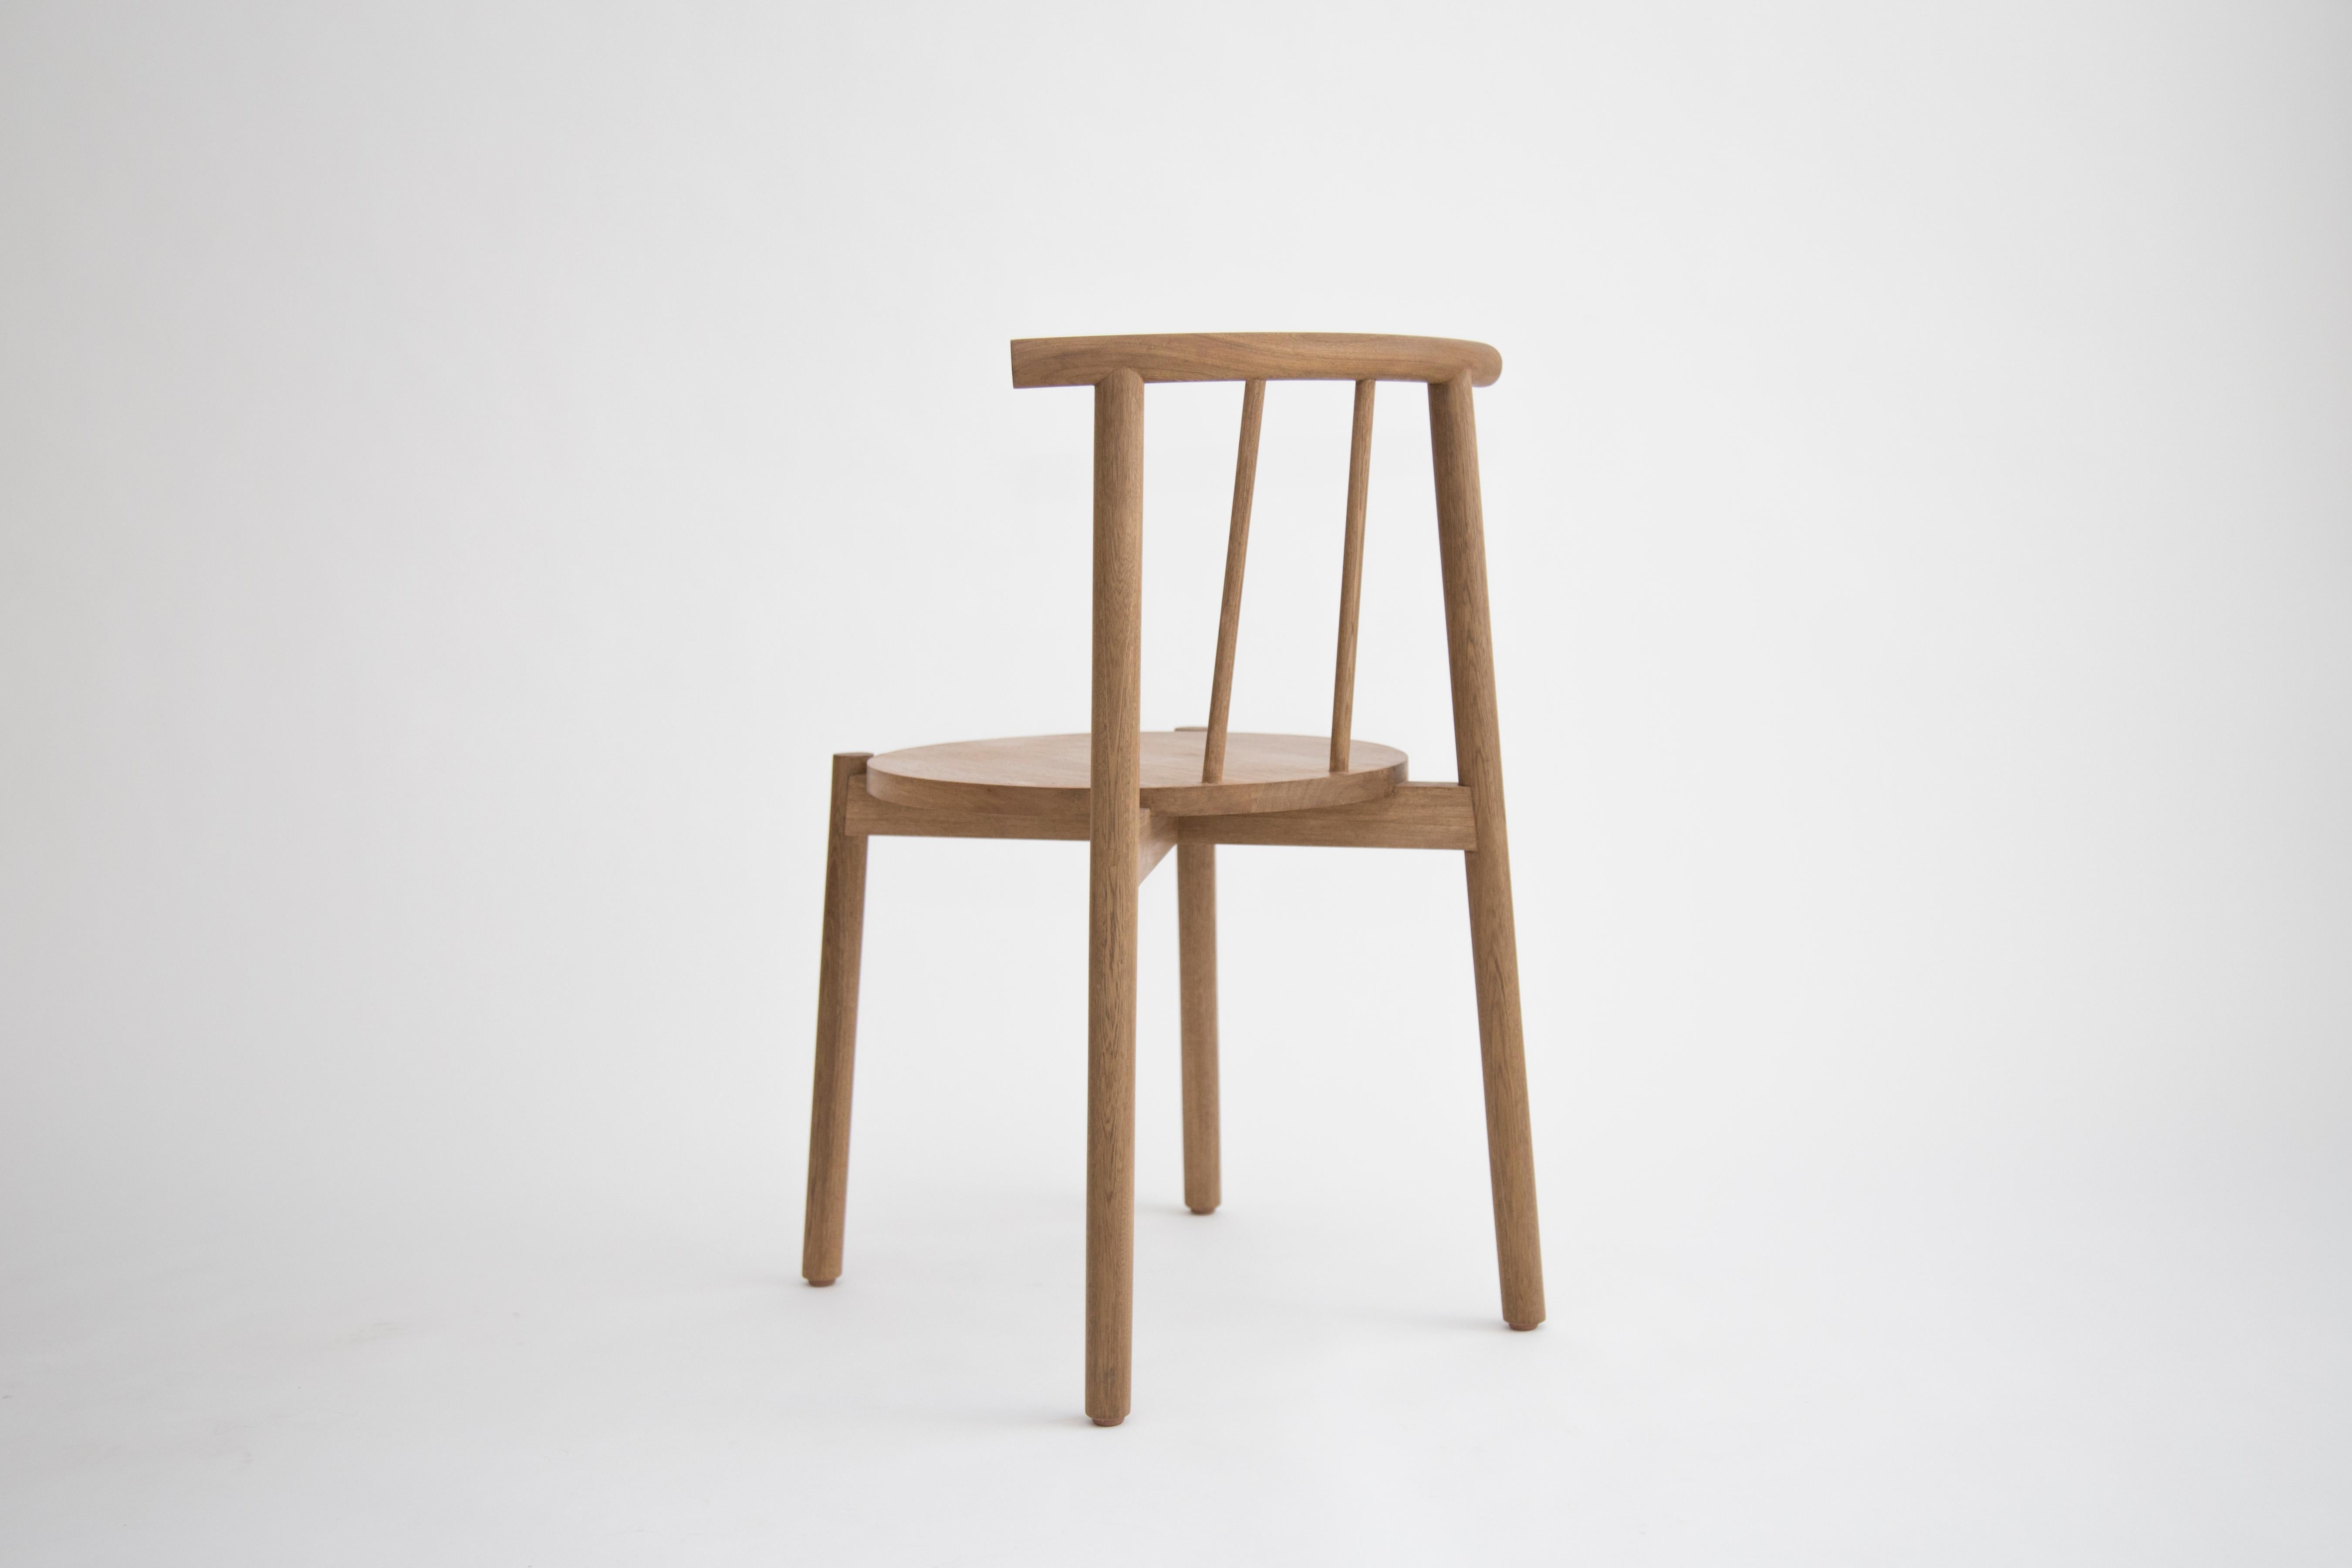 Ein Stuhl für alle Gelegenheiten, von gewöhnlich bis außergewöhnlich. Dieses Möbelstück ist eine Synthese aus Struktur und Form, die sich durch ihre konstruktive Klarheit und stille Schönheit auszeichnet. 

Dieser Stuhl aus Eichenholz wird von